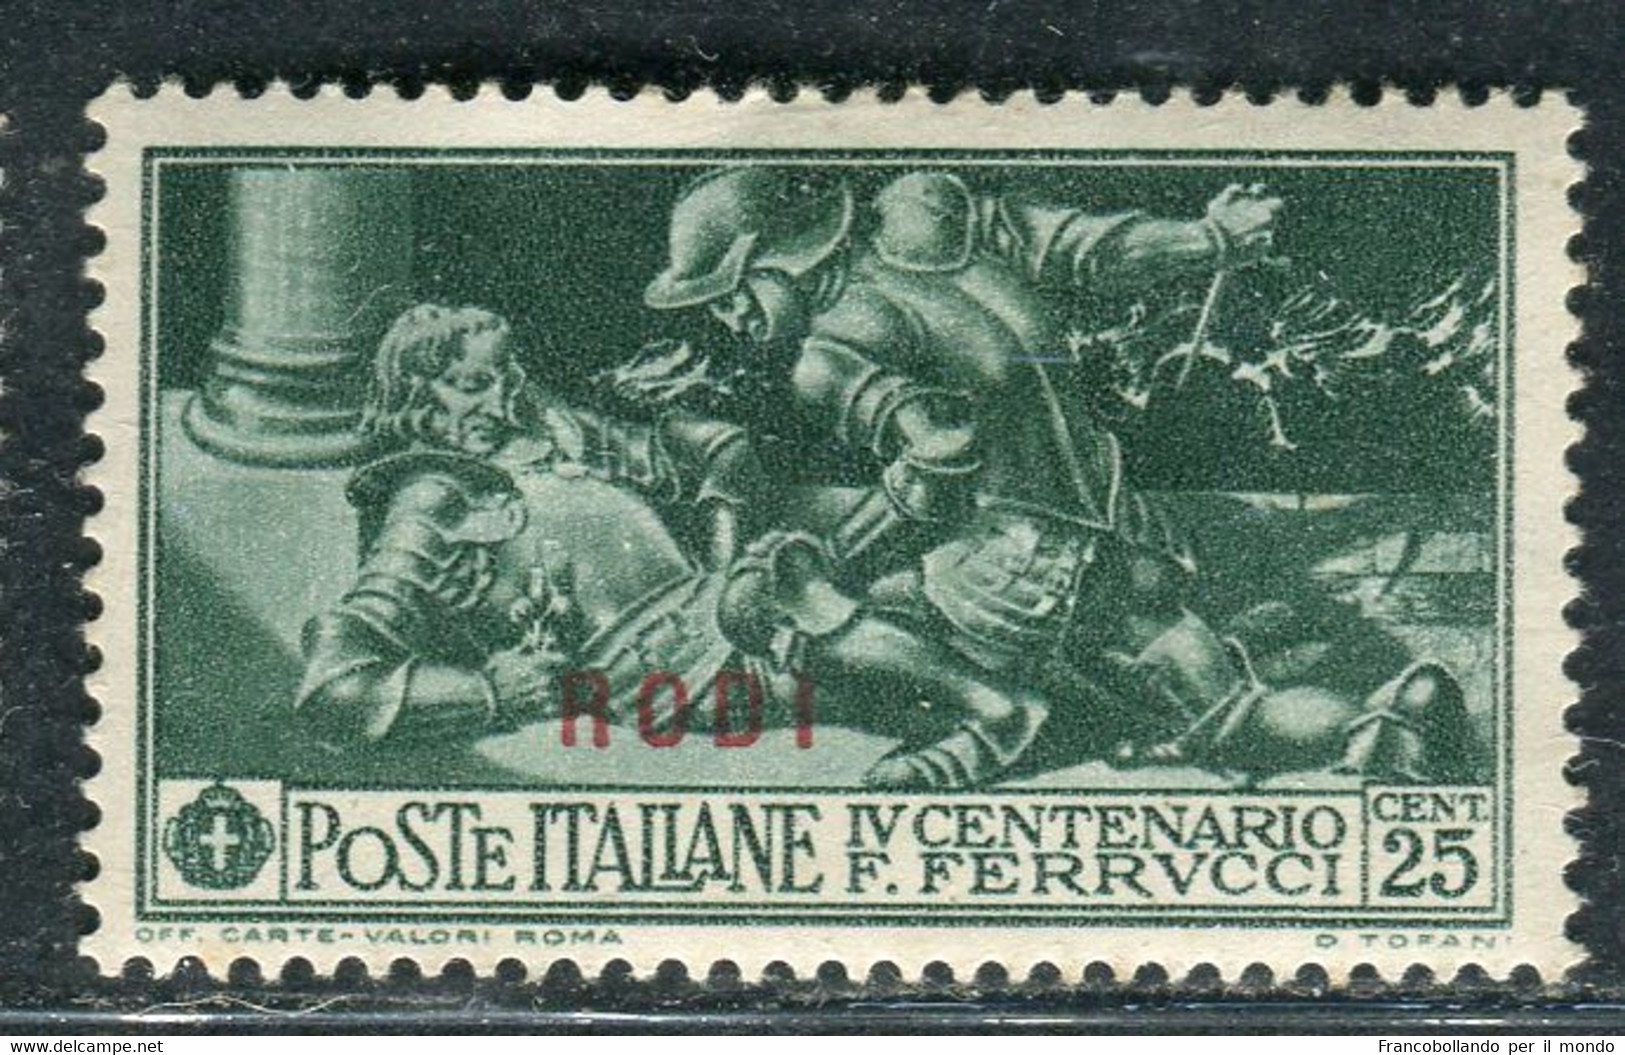 1930 Egeo Isole Rodi 25 Cent Serie Ferrucci MH Sassone 13 - Egée (Lipso)